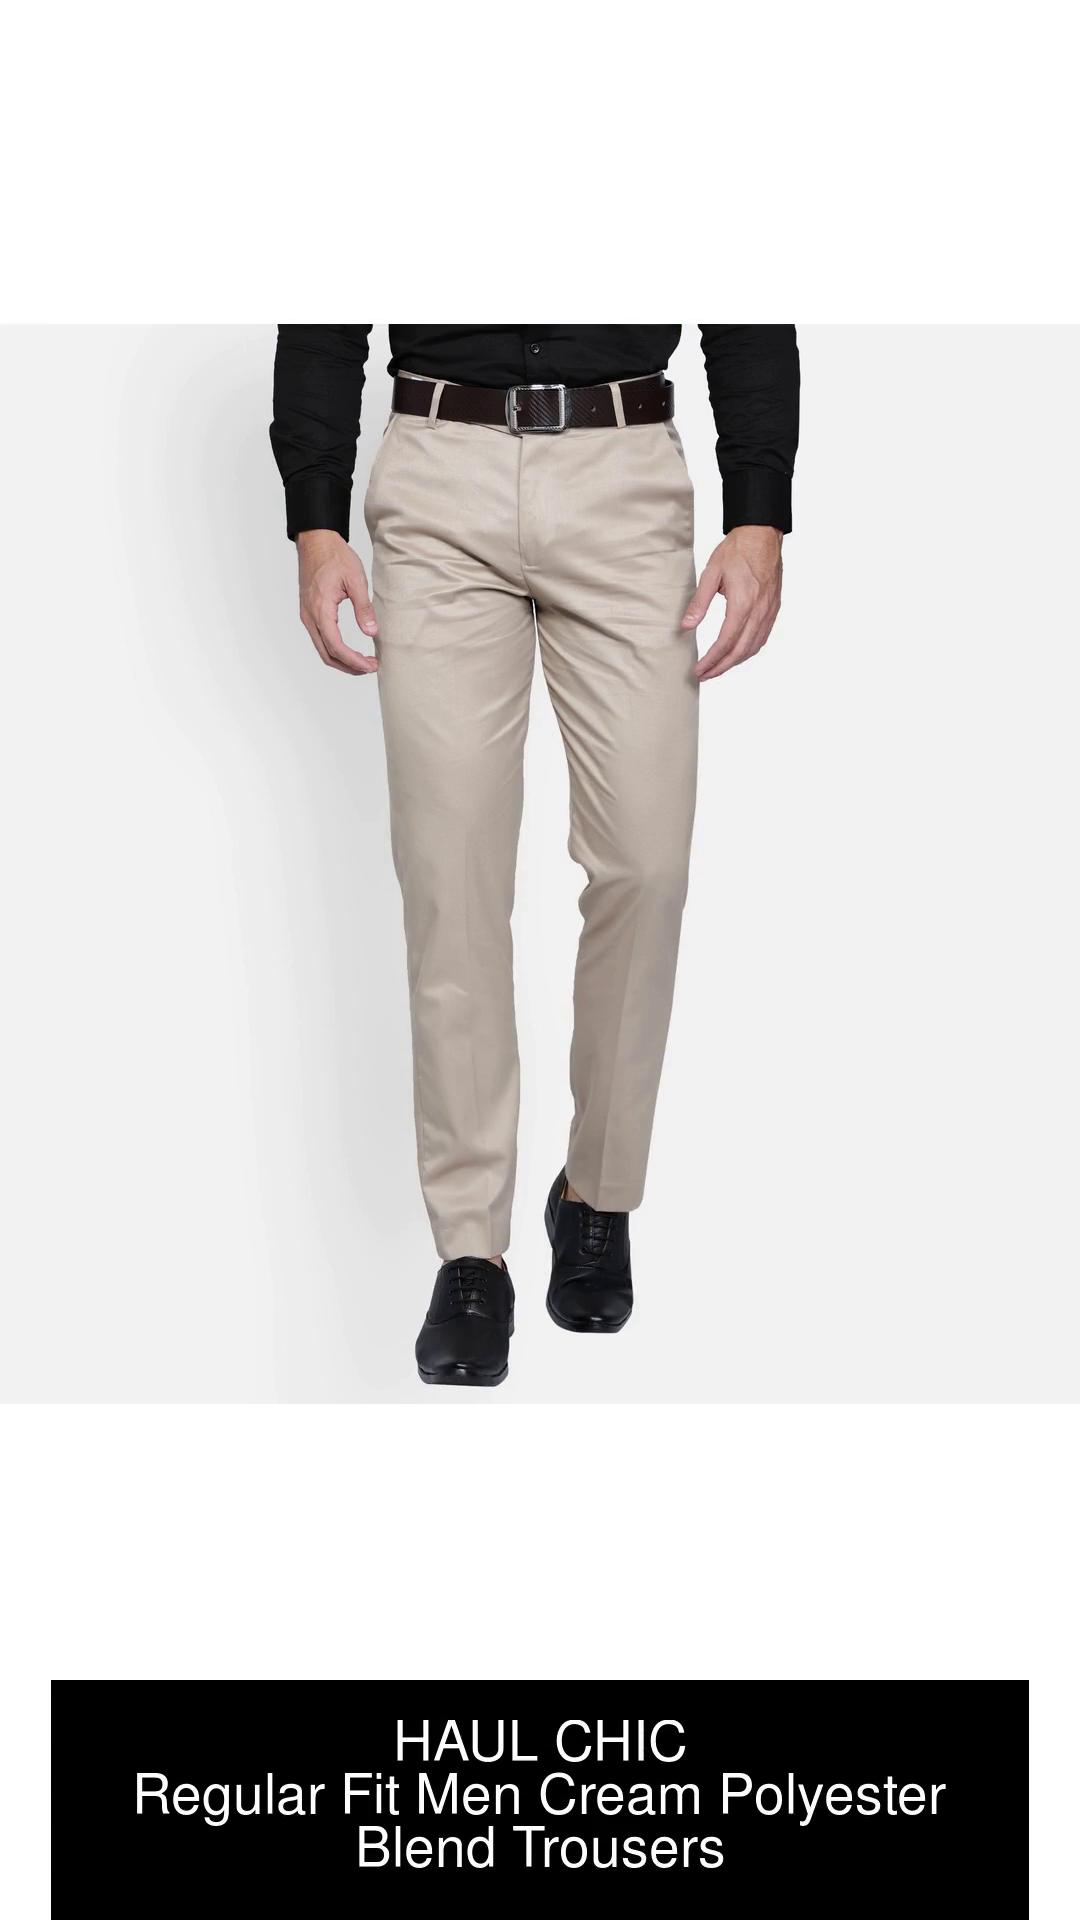 CYPHUS Regular Fit Men Cream Trousers  Buy CYPHUS Regular Fit Men Cream  Trousers Online at Best Prices in India  Flipkartcom